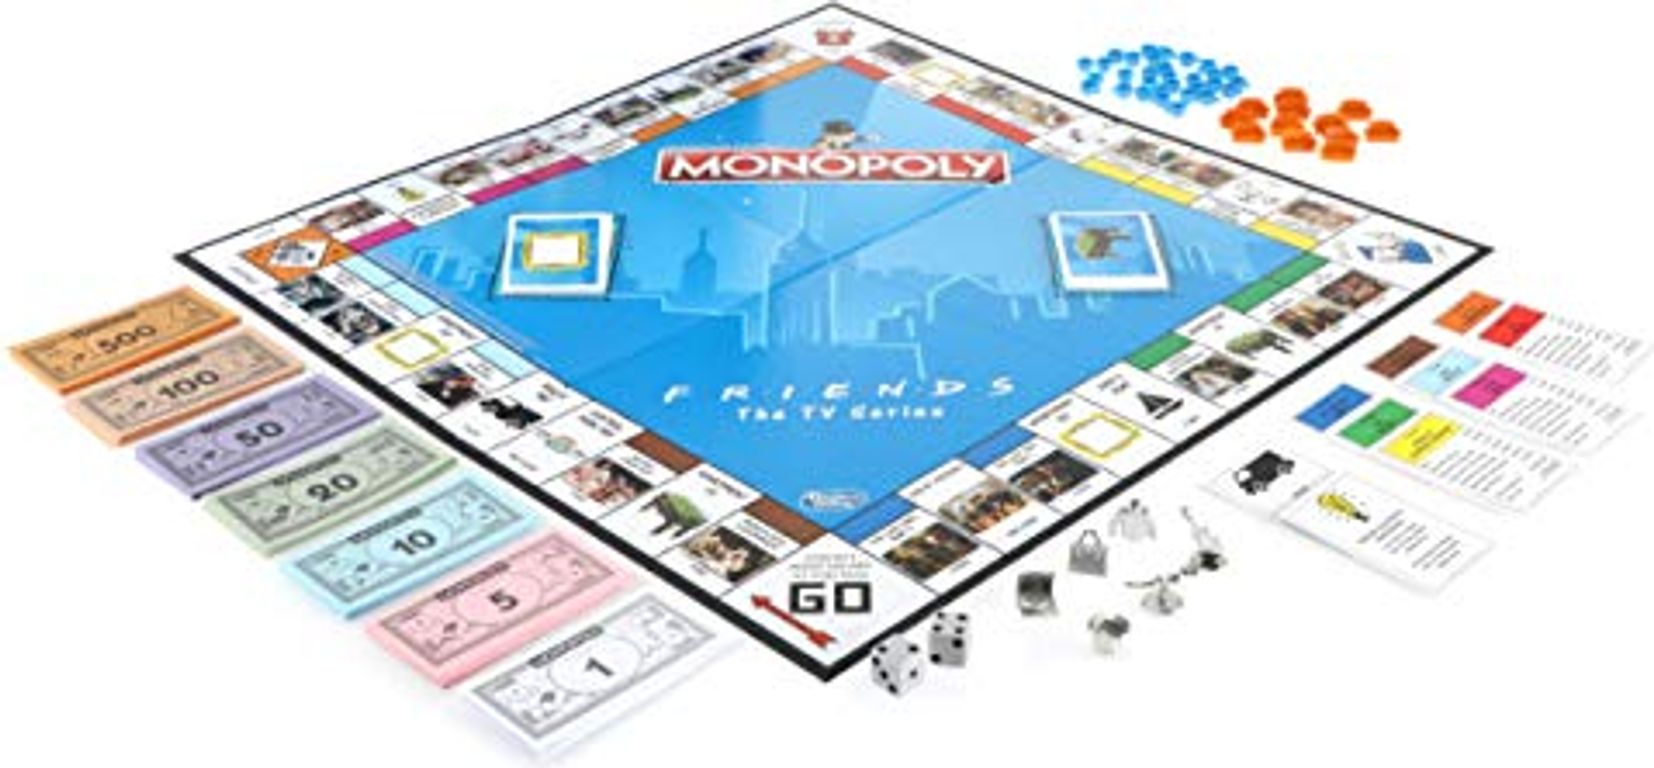 Monopoly: Friends The TV Series partes